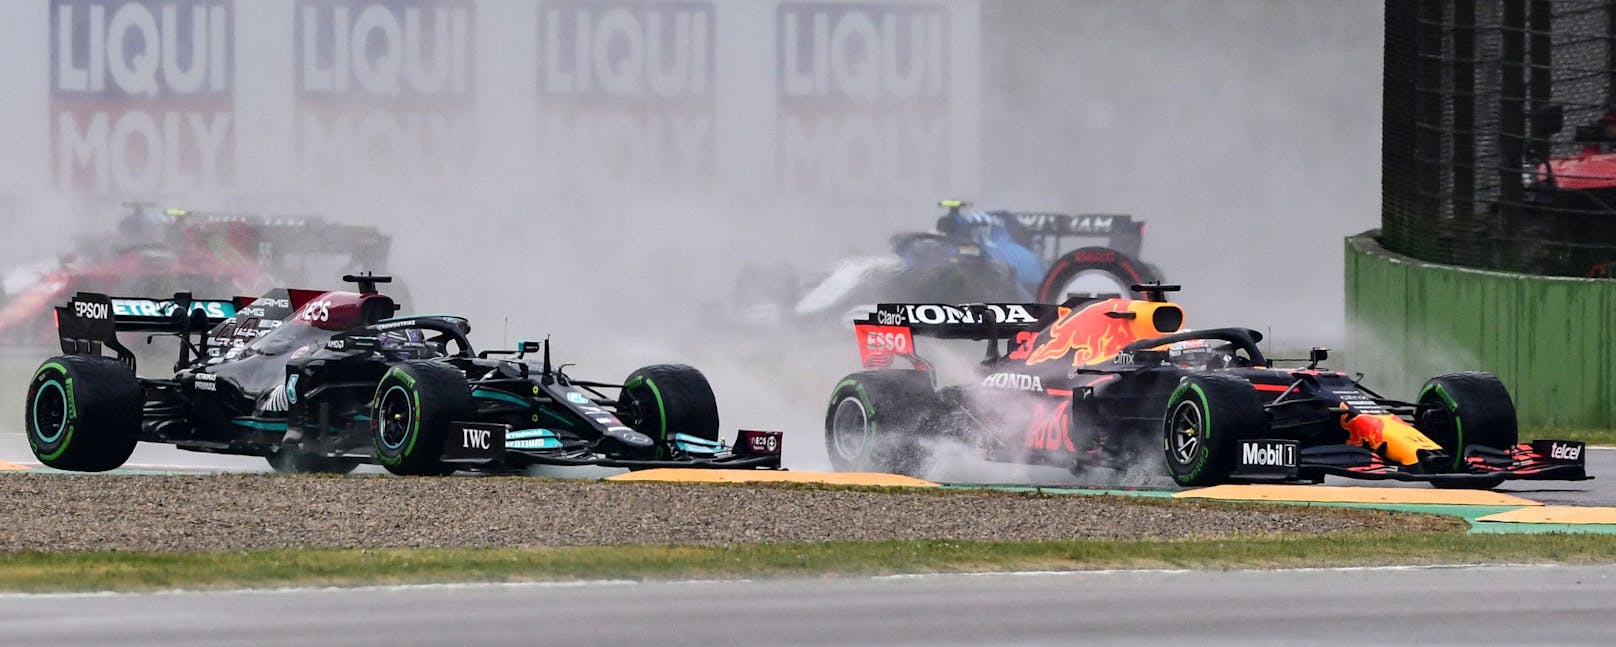 Max Verstappen und Lewis Hamilton kollidierten in der ersten Kurve des Rennens. 